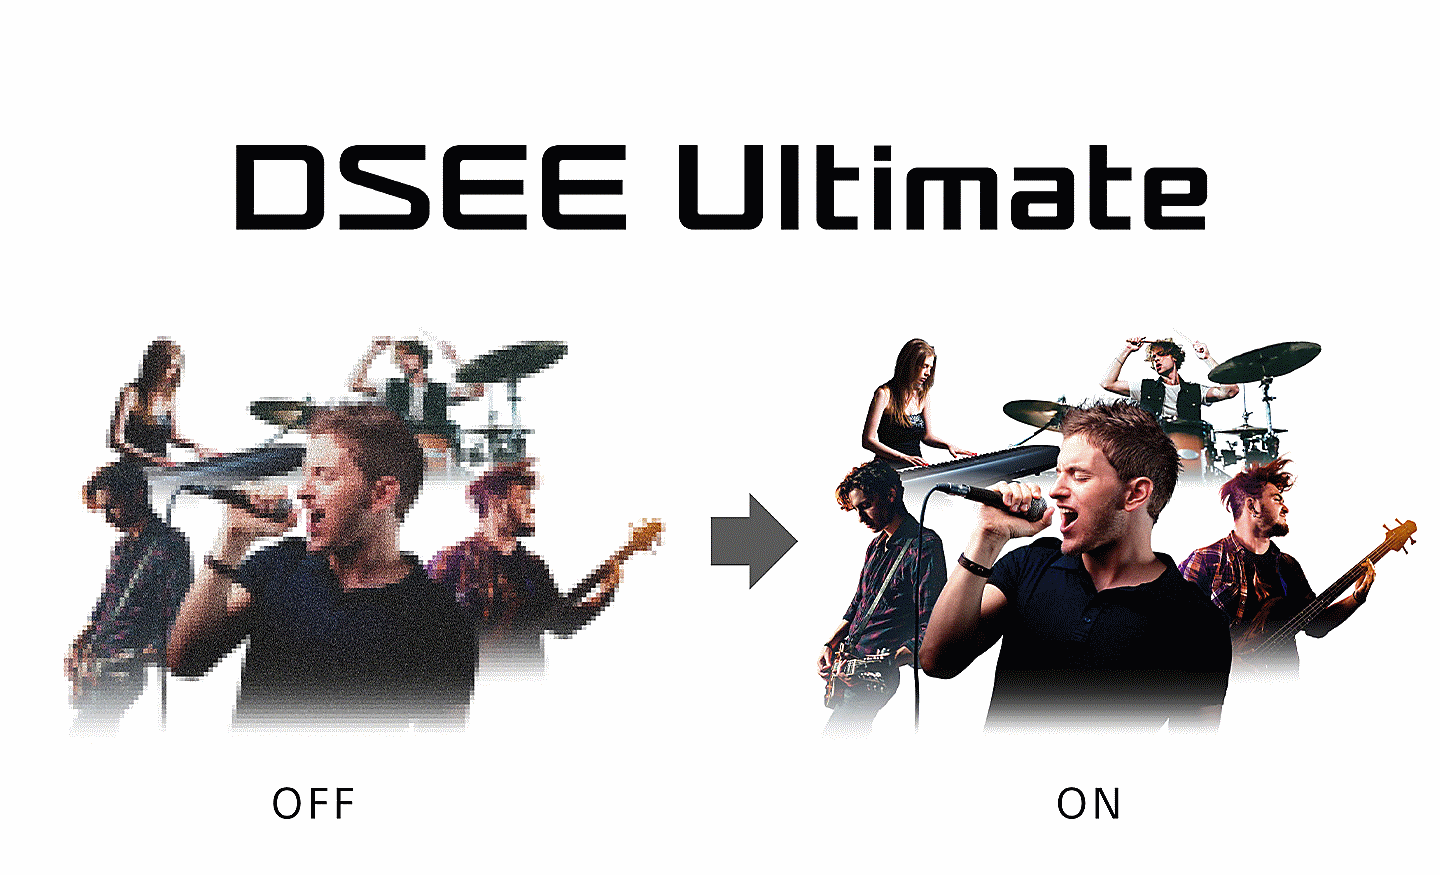 Hai hình ảnh giống hệt nhau thể hiện nhiều người đang chơi nhạc cụ dưới dòng chữ DSEE Ultimate, ảnh bên trái mờ còn ảnh bên phải rõ nét